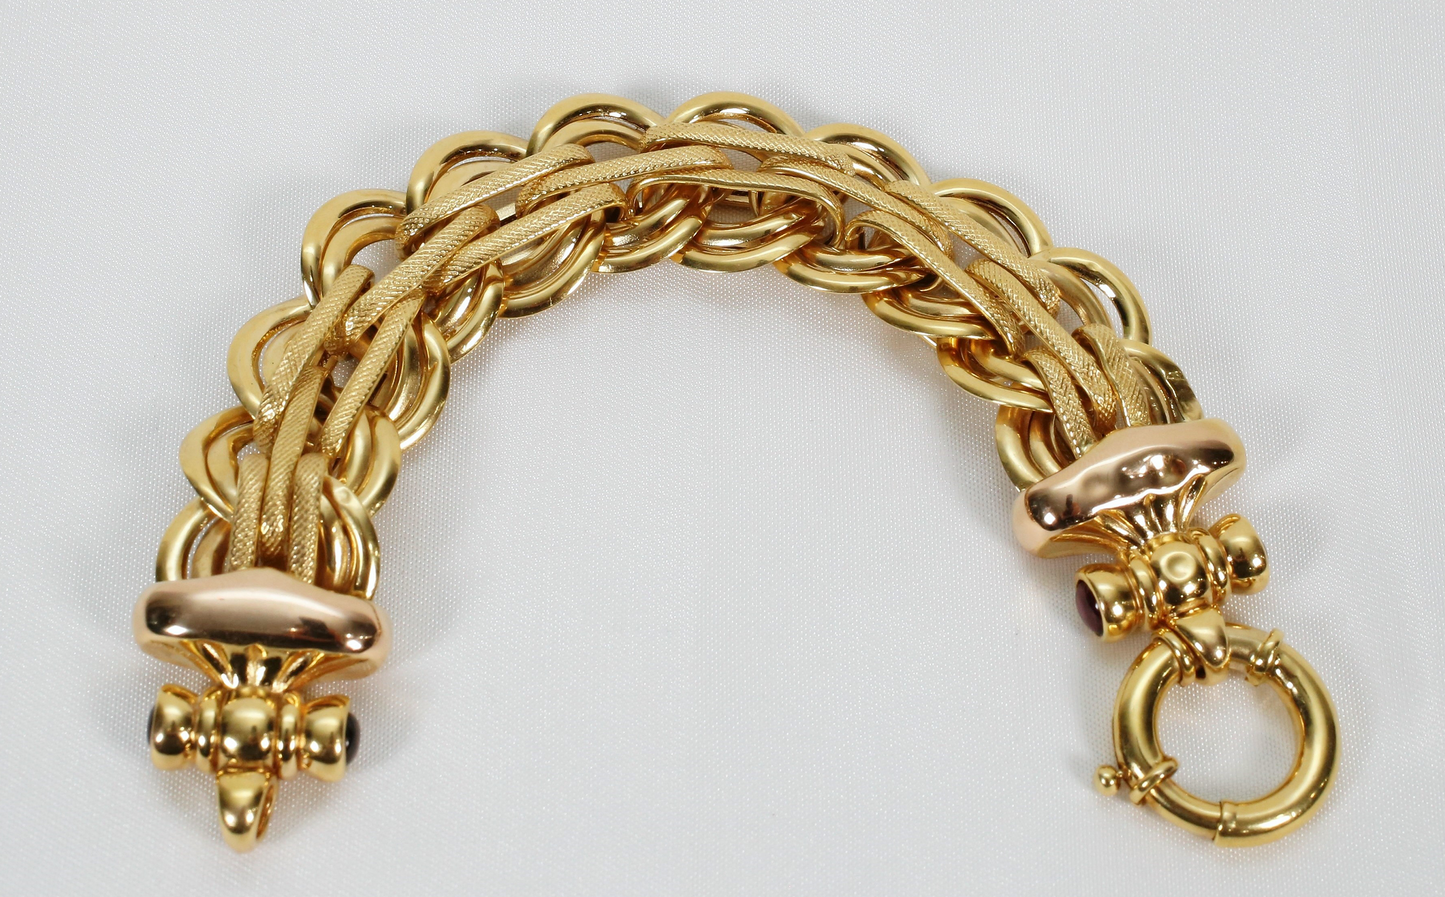 14k Yellow Gold Interlocked Round Link Garnet Bracelet, 8 inches - 39.7g